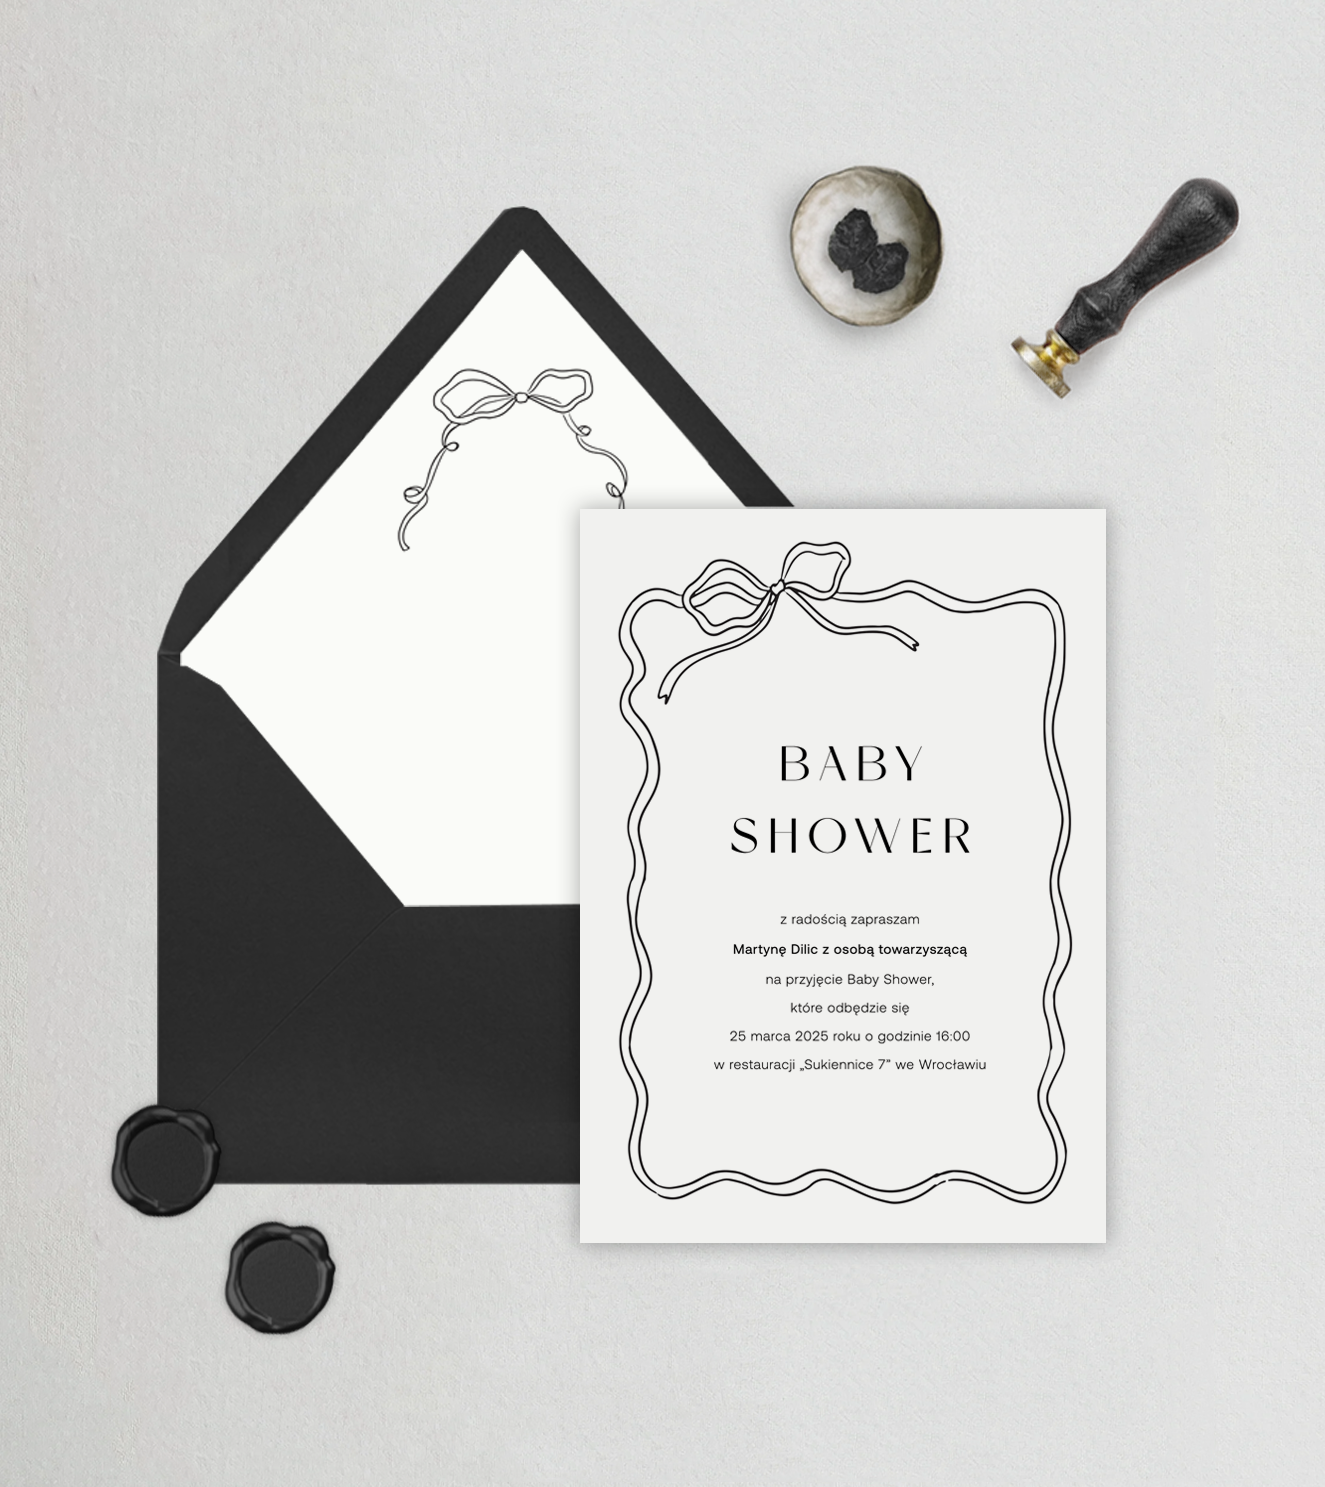 Minimalistyczne zaproszenia na Baby Shower z wstążką, kokardą. Czarna kokarda podkreśla elegancje zaproszenia na Baby Showej, dodaje klasy i szyku.